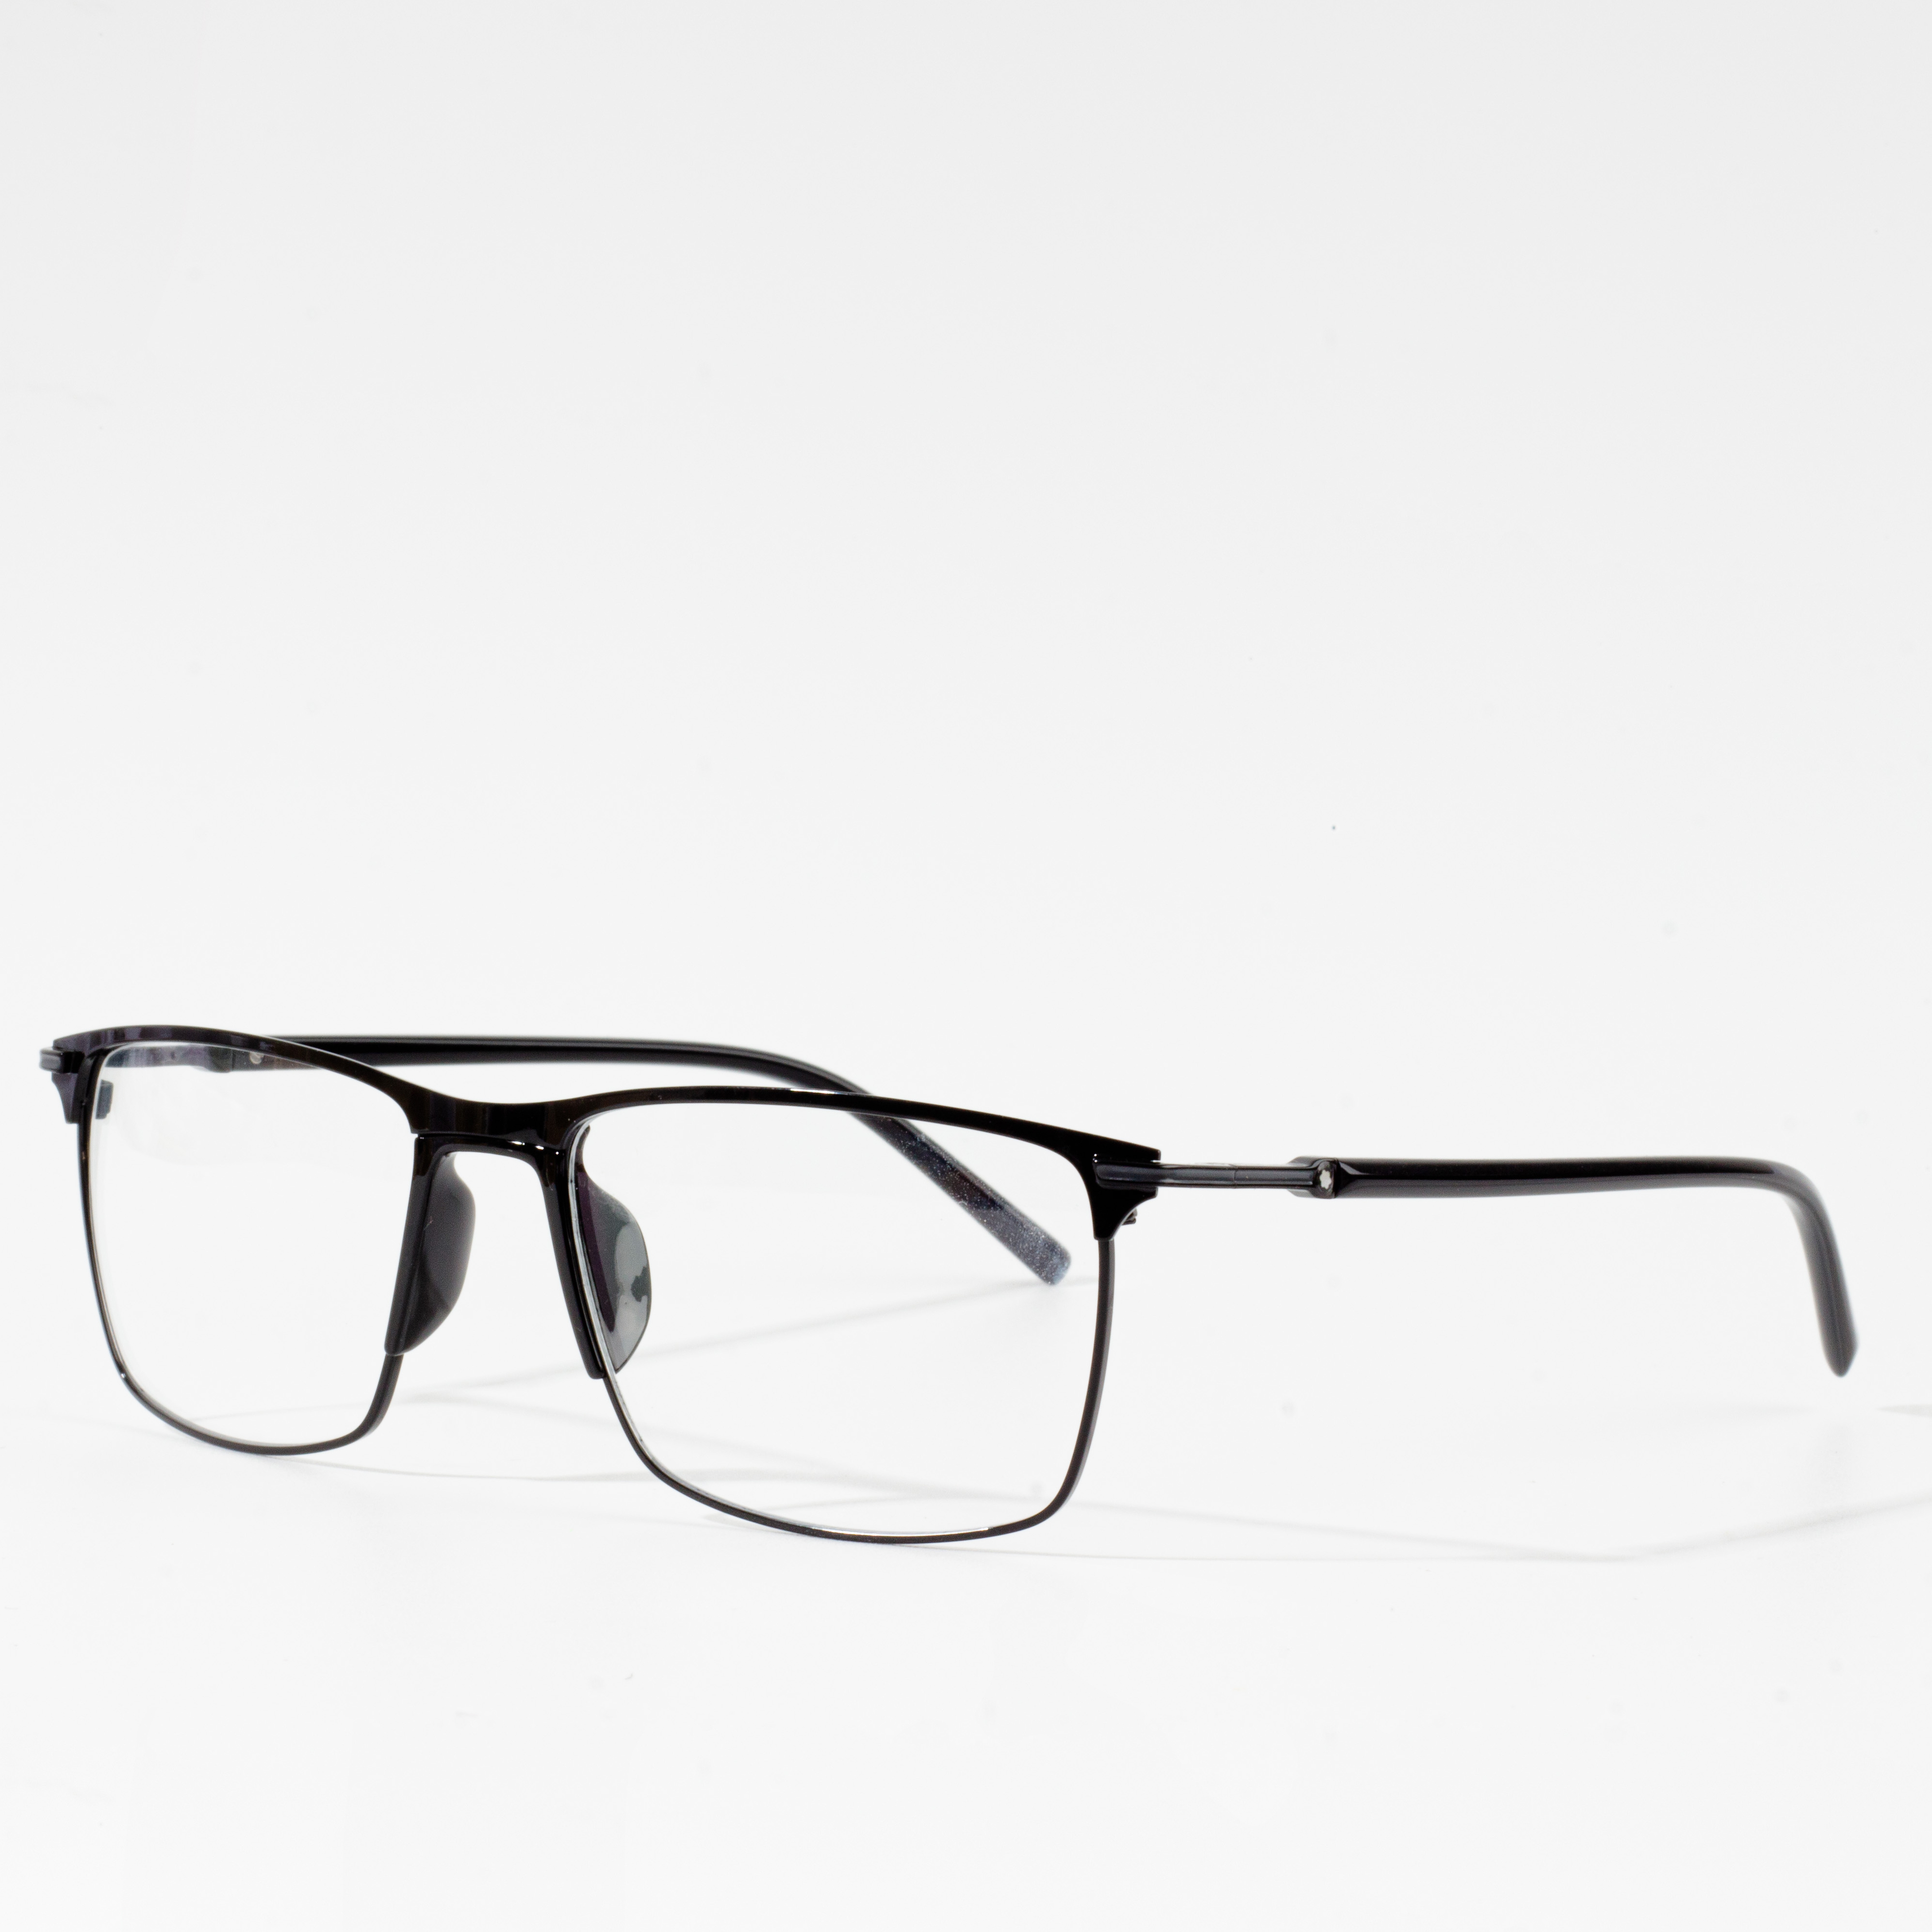 optical eyewear frames men